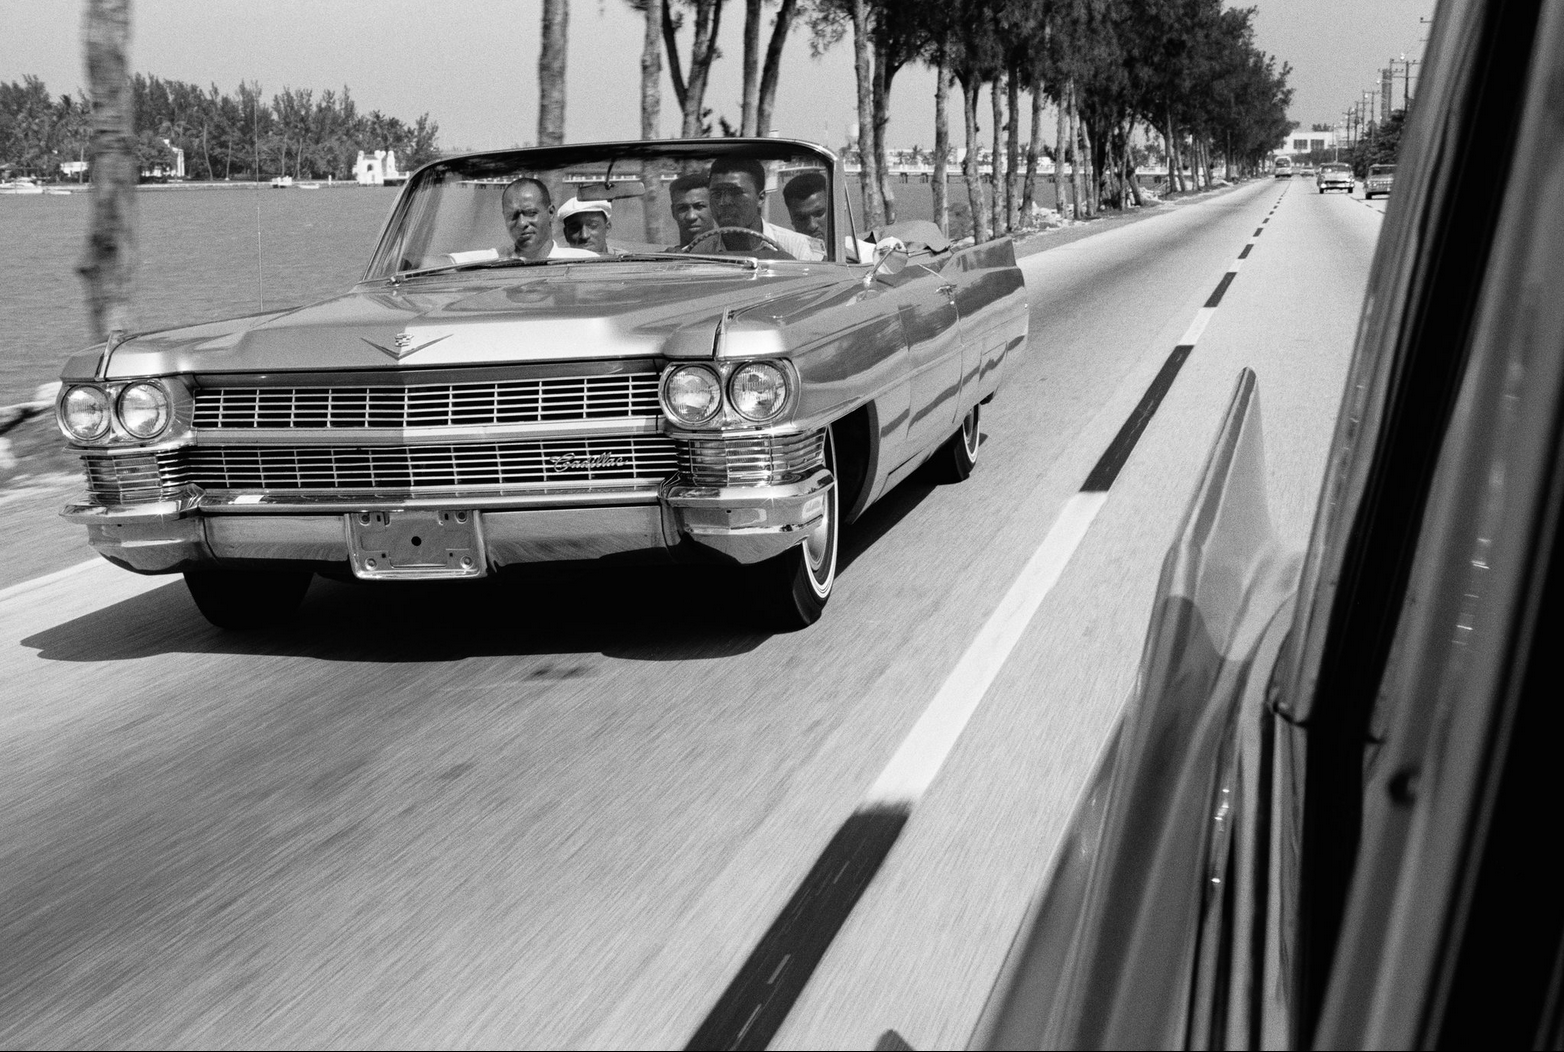 Muhammad Ali driving his Cadillac 1966.